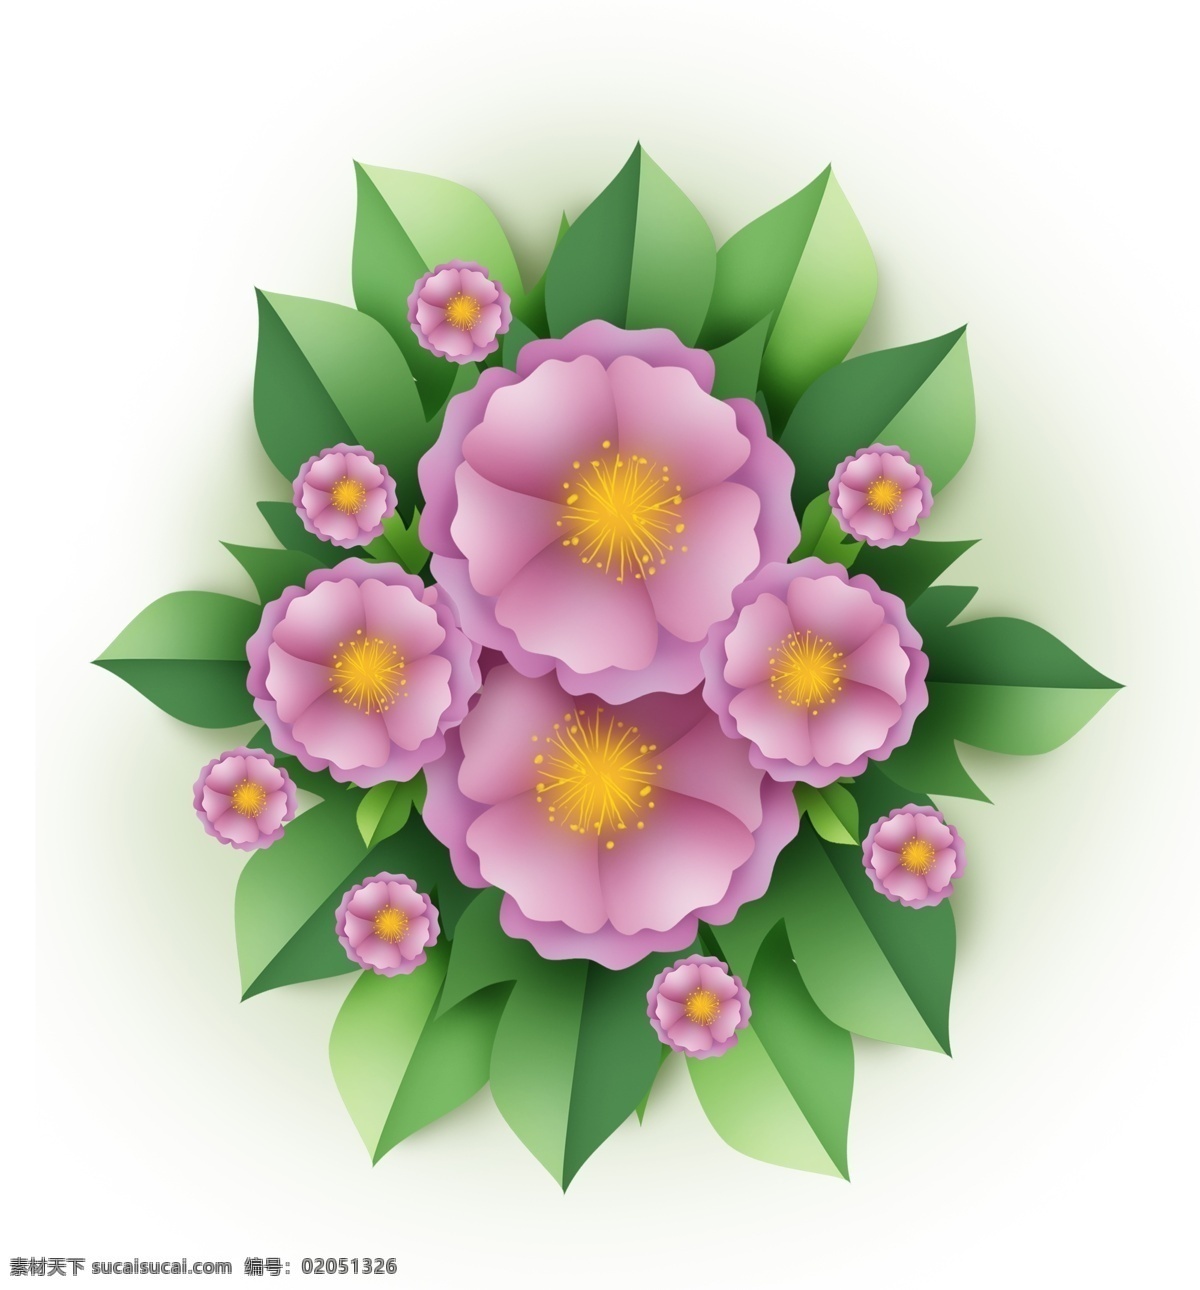 淡紫色 立体 花卉 叶子 情人节花朵 花球 女性 婚庆花卉 春天 紫色花朵 婚礼花朵 紫色 花圃 花朵 情人节礼物